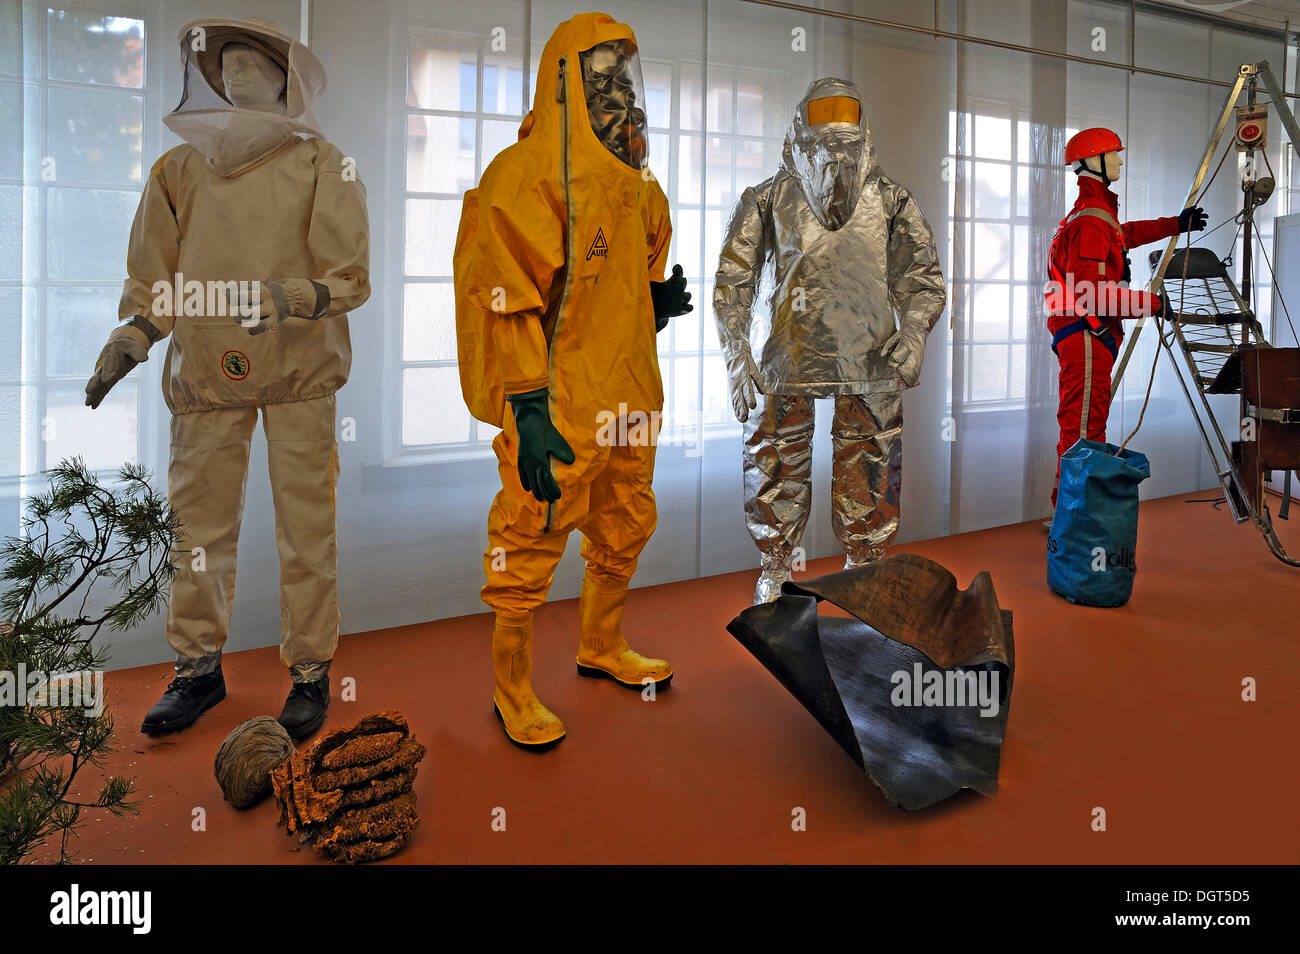 Verschiedenen Schutzbekleidung für Feuerwehr, ein Insekt Schutzkleidung, eine chemische Schutzanzug mit einer Atemmaske ein Stockfoto